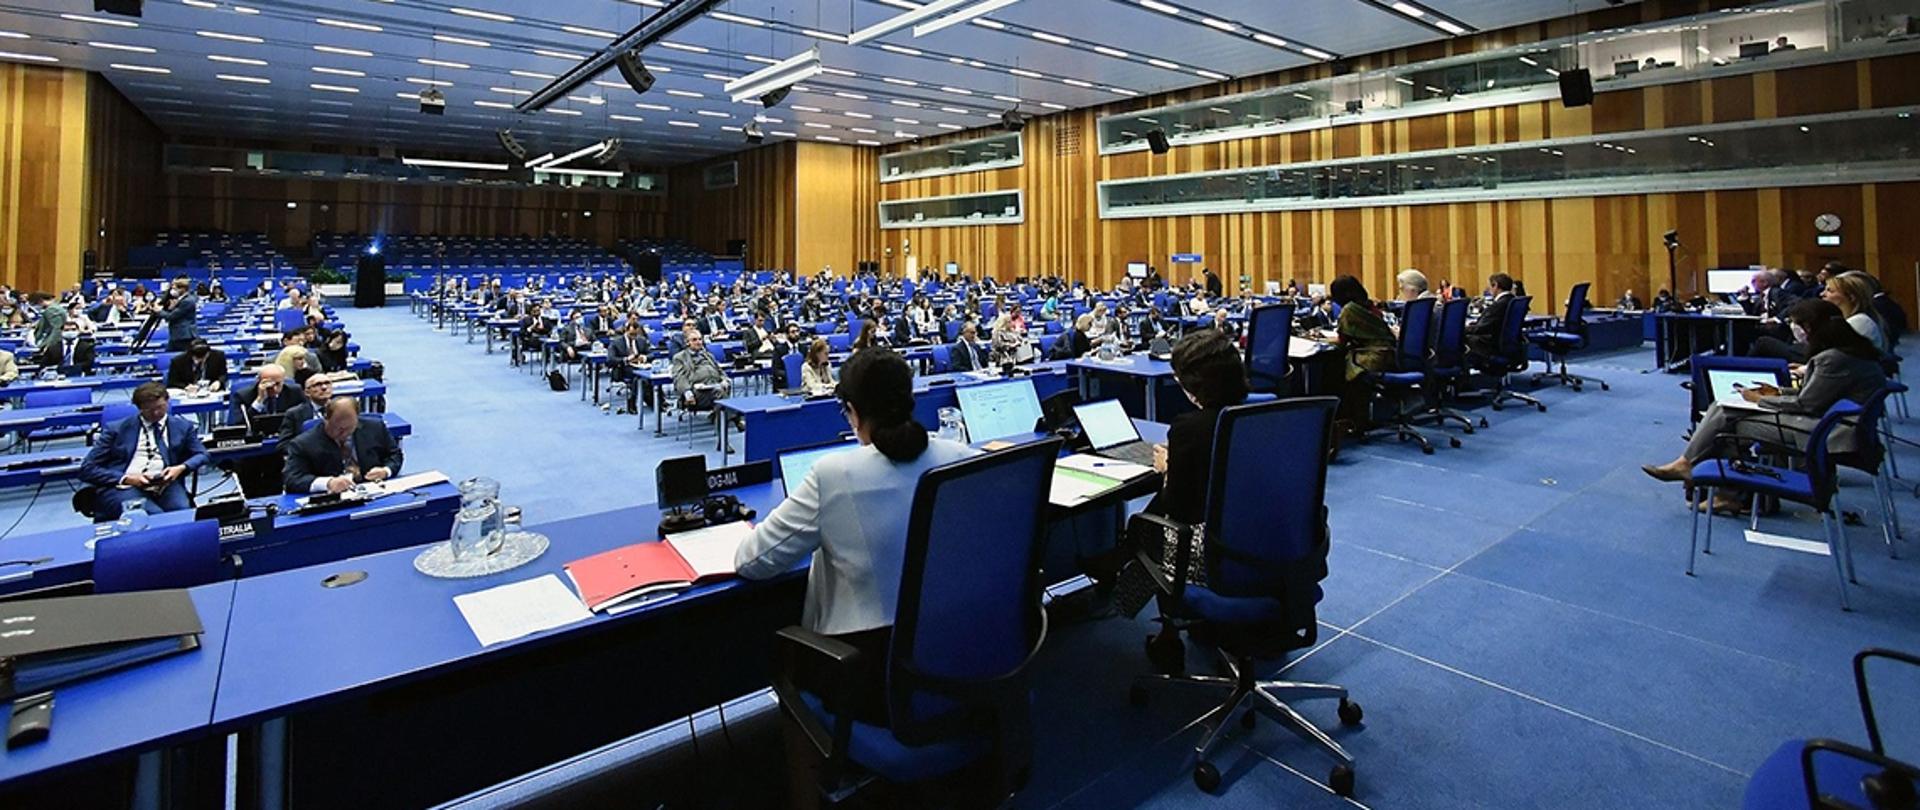 Spotkanie Rady Gubernatorów IAEA (fot. D. Calma/IAEA)